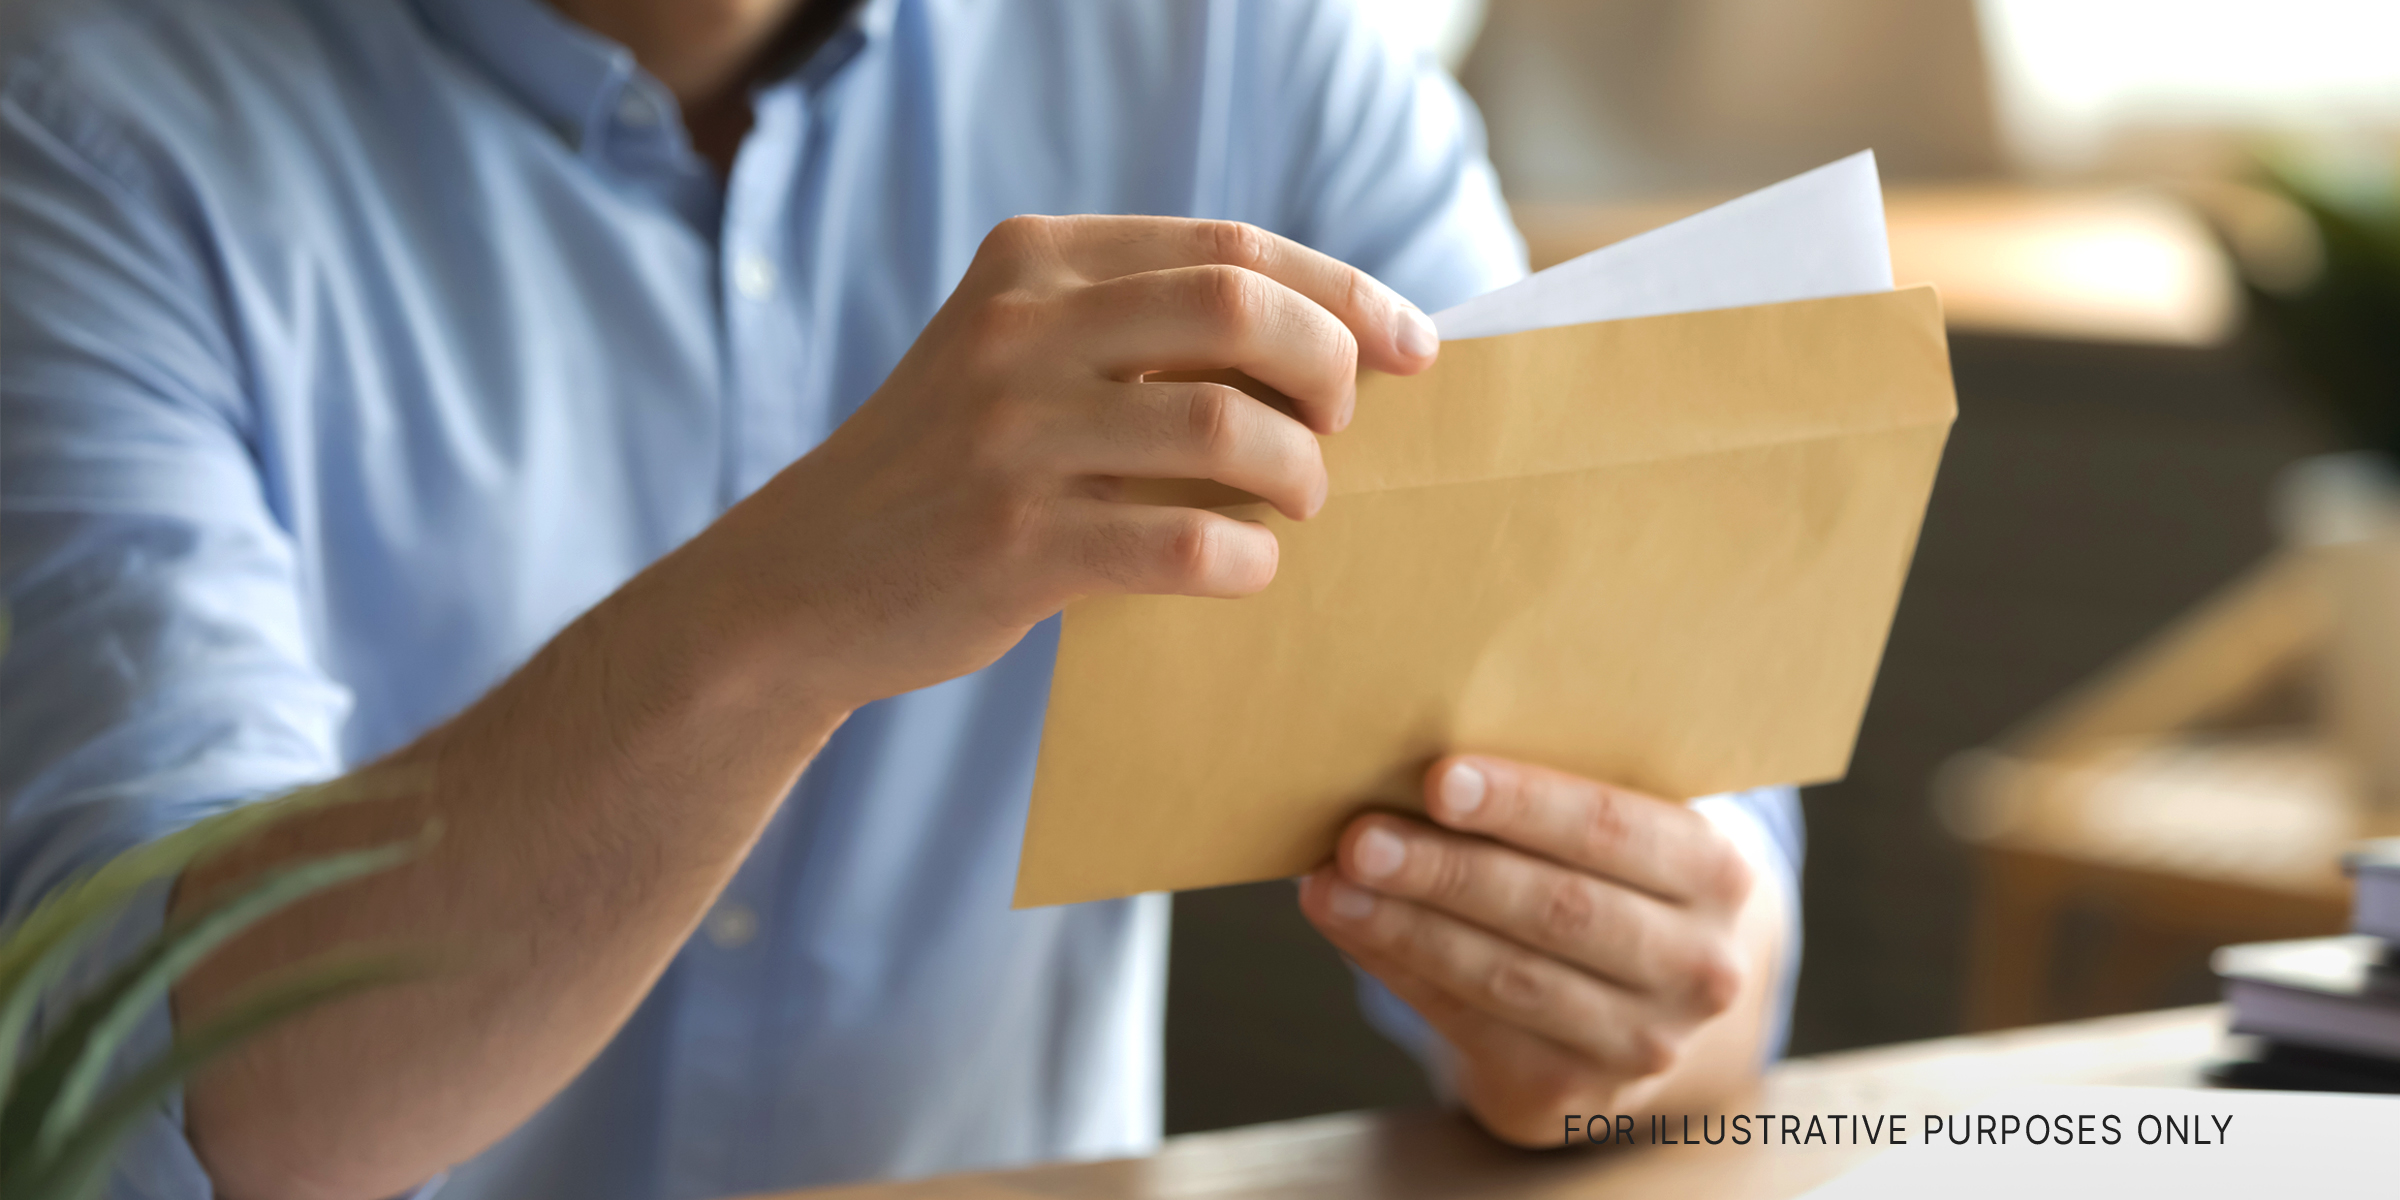 Ein Mann öffnet einen Umschlag und nimmt einen Brief heraus | Quelle: Shutterstock